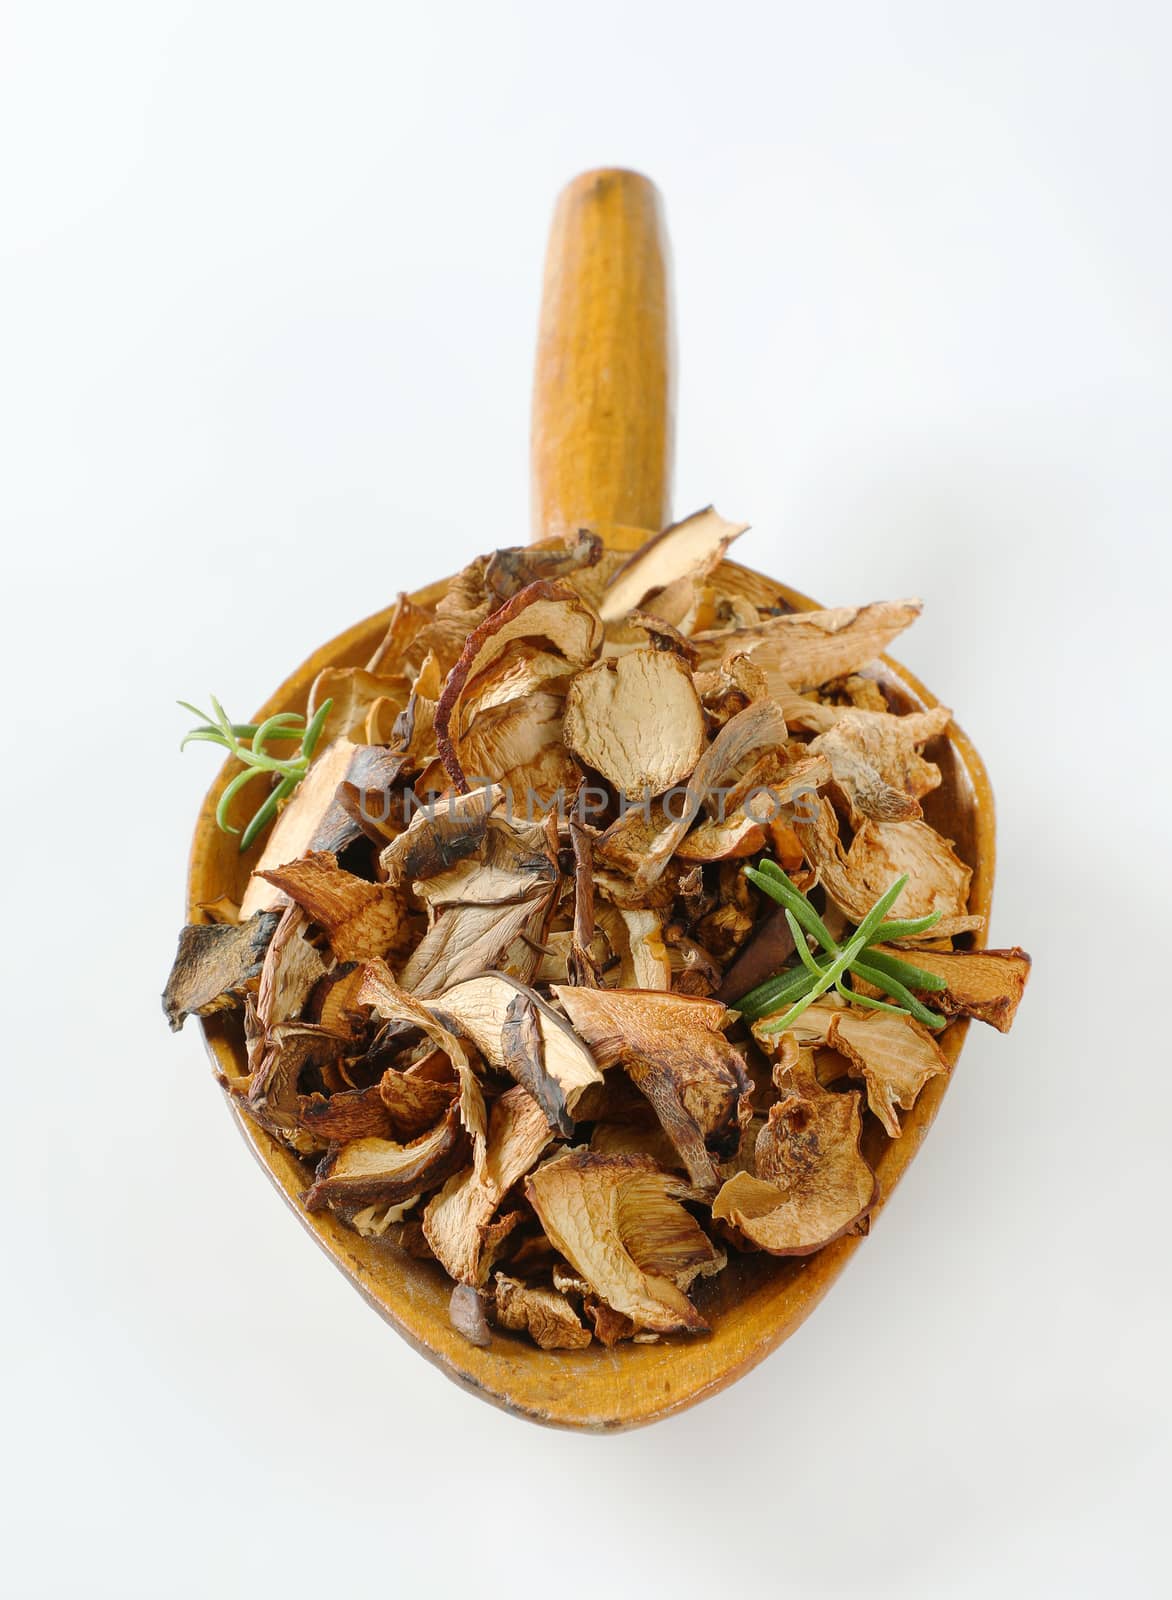 scoop of dried mushrooms by Digifoodstock